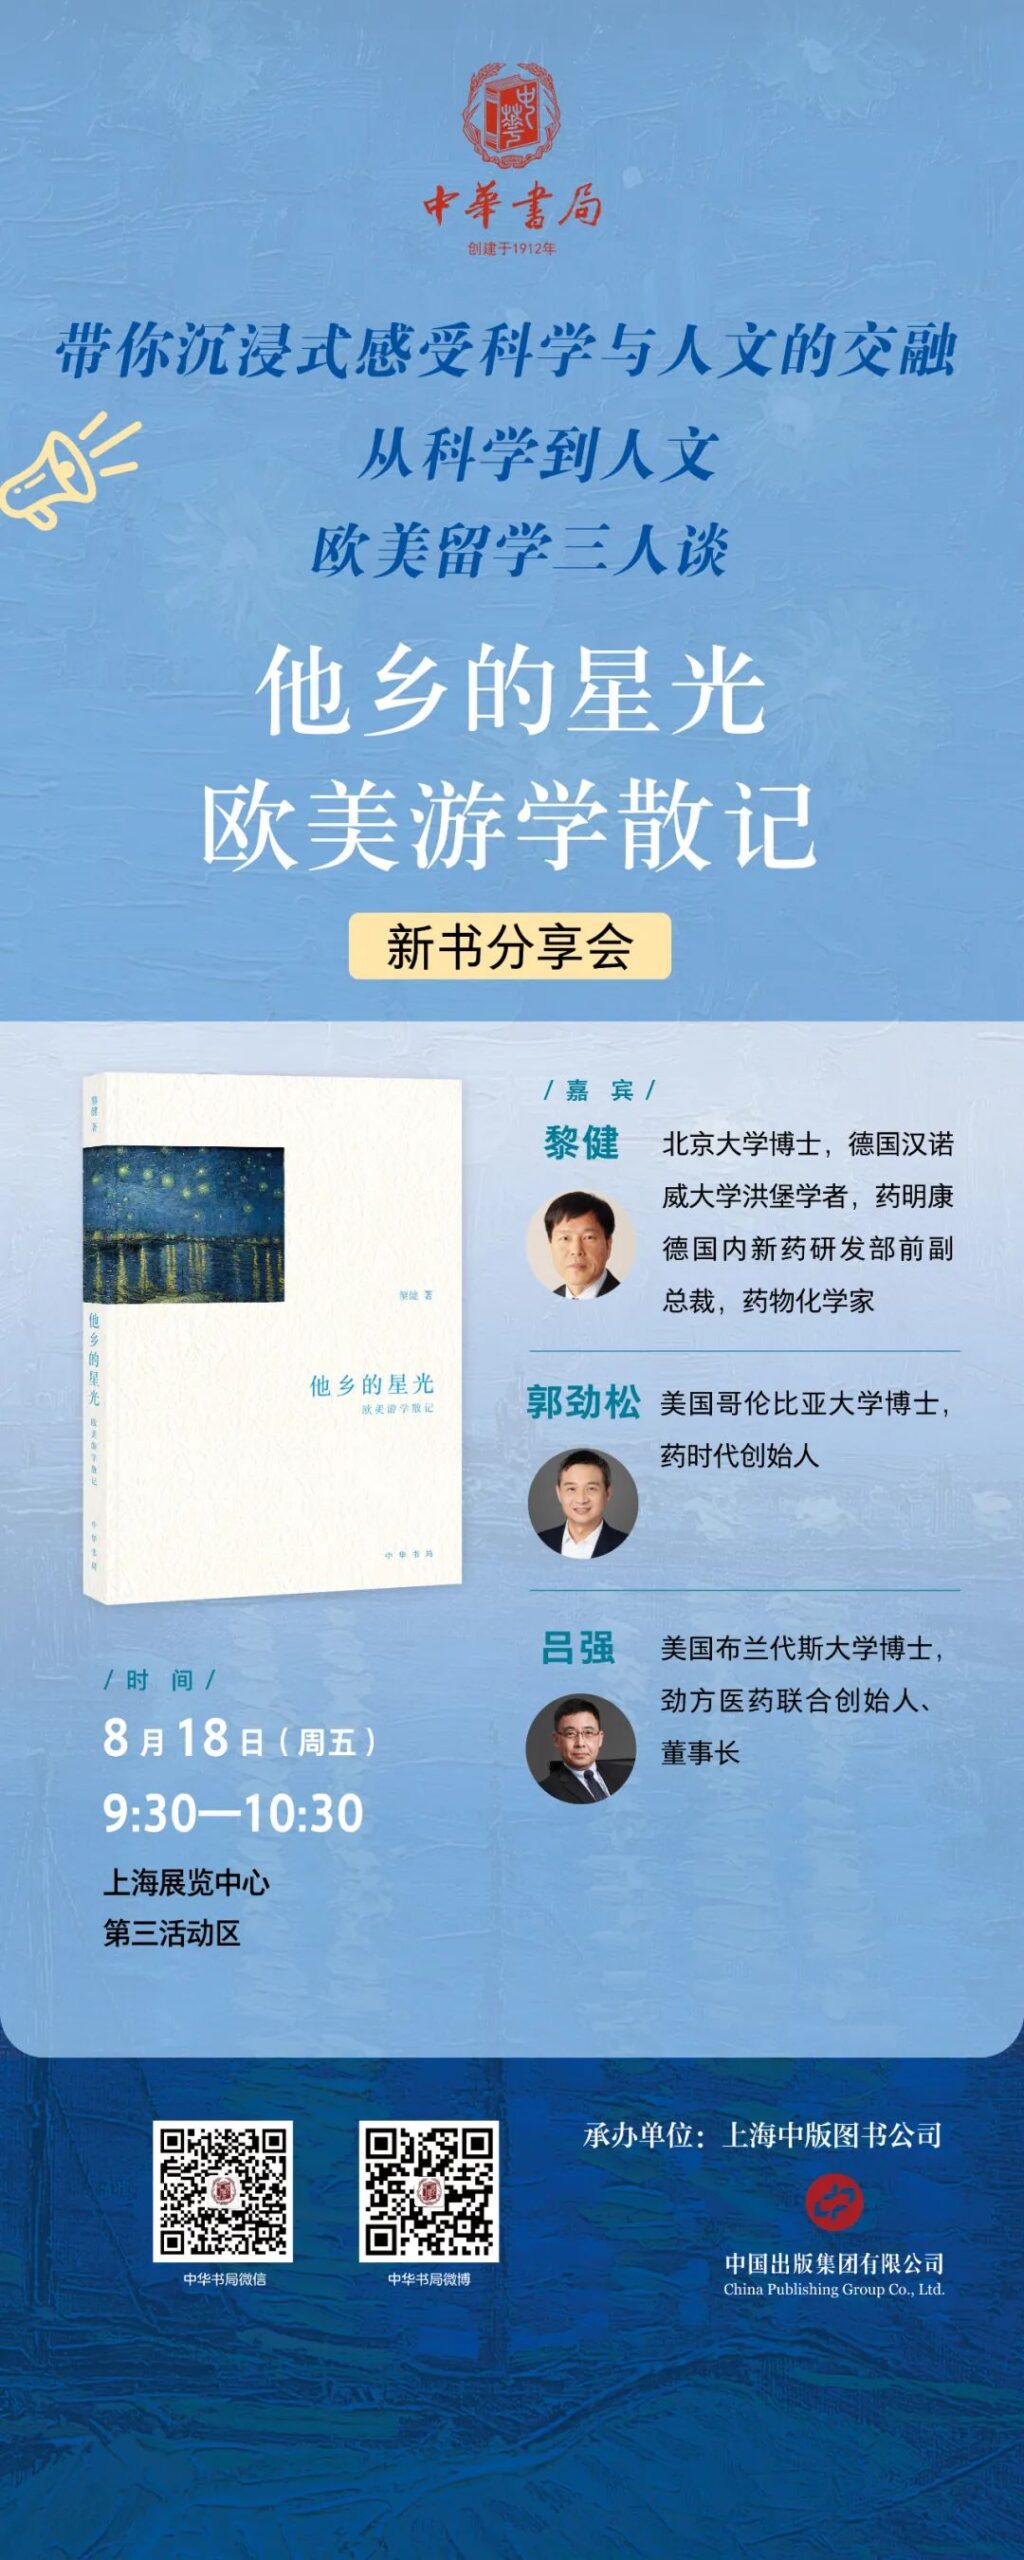 上海书展新书分享会 | 黎健博士、郭劲松博士、吕强博士为您带来欧美留学三人谈